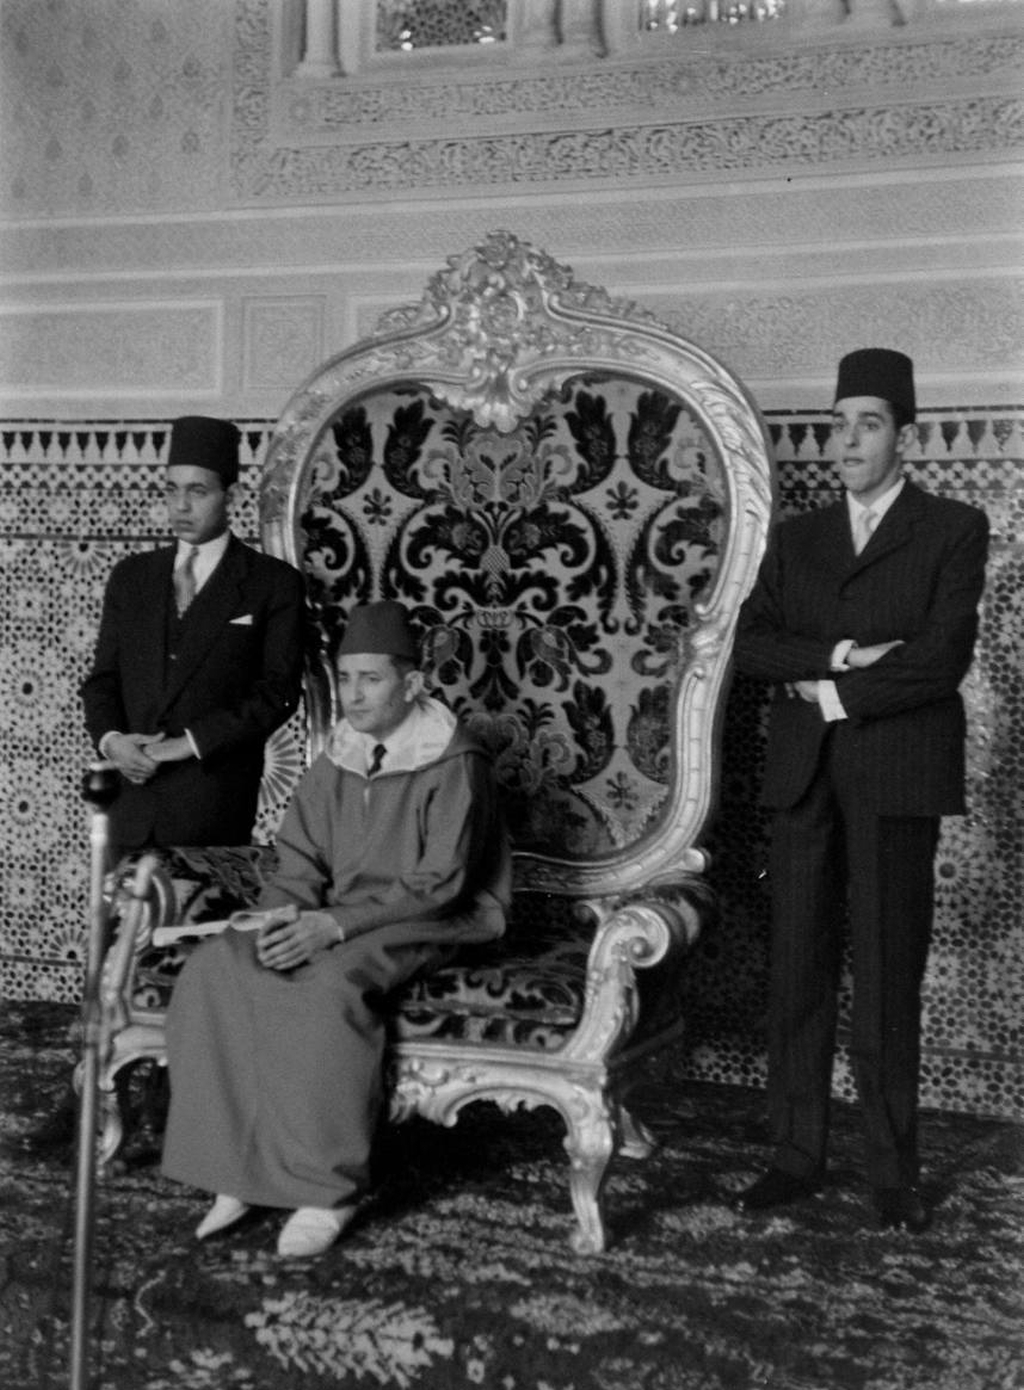 18 novembre 1955 - Annonce de l'independance du Maroc 22377885277_39c67d9c6a_o